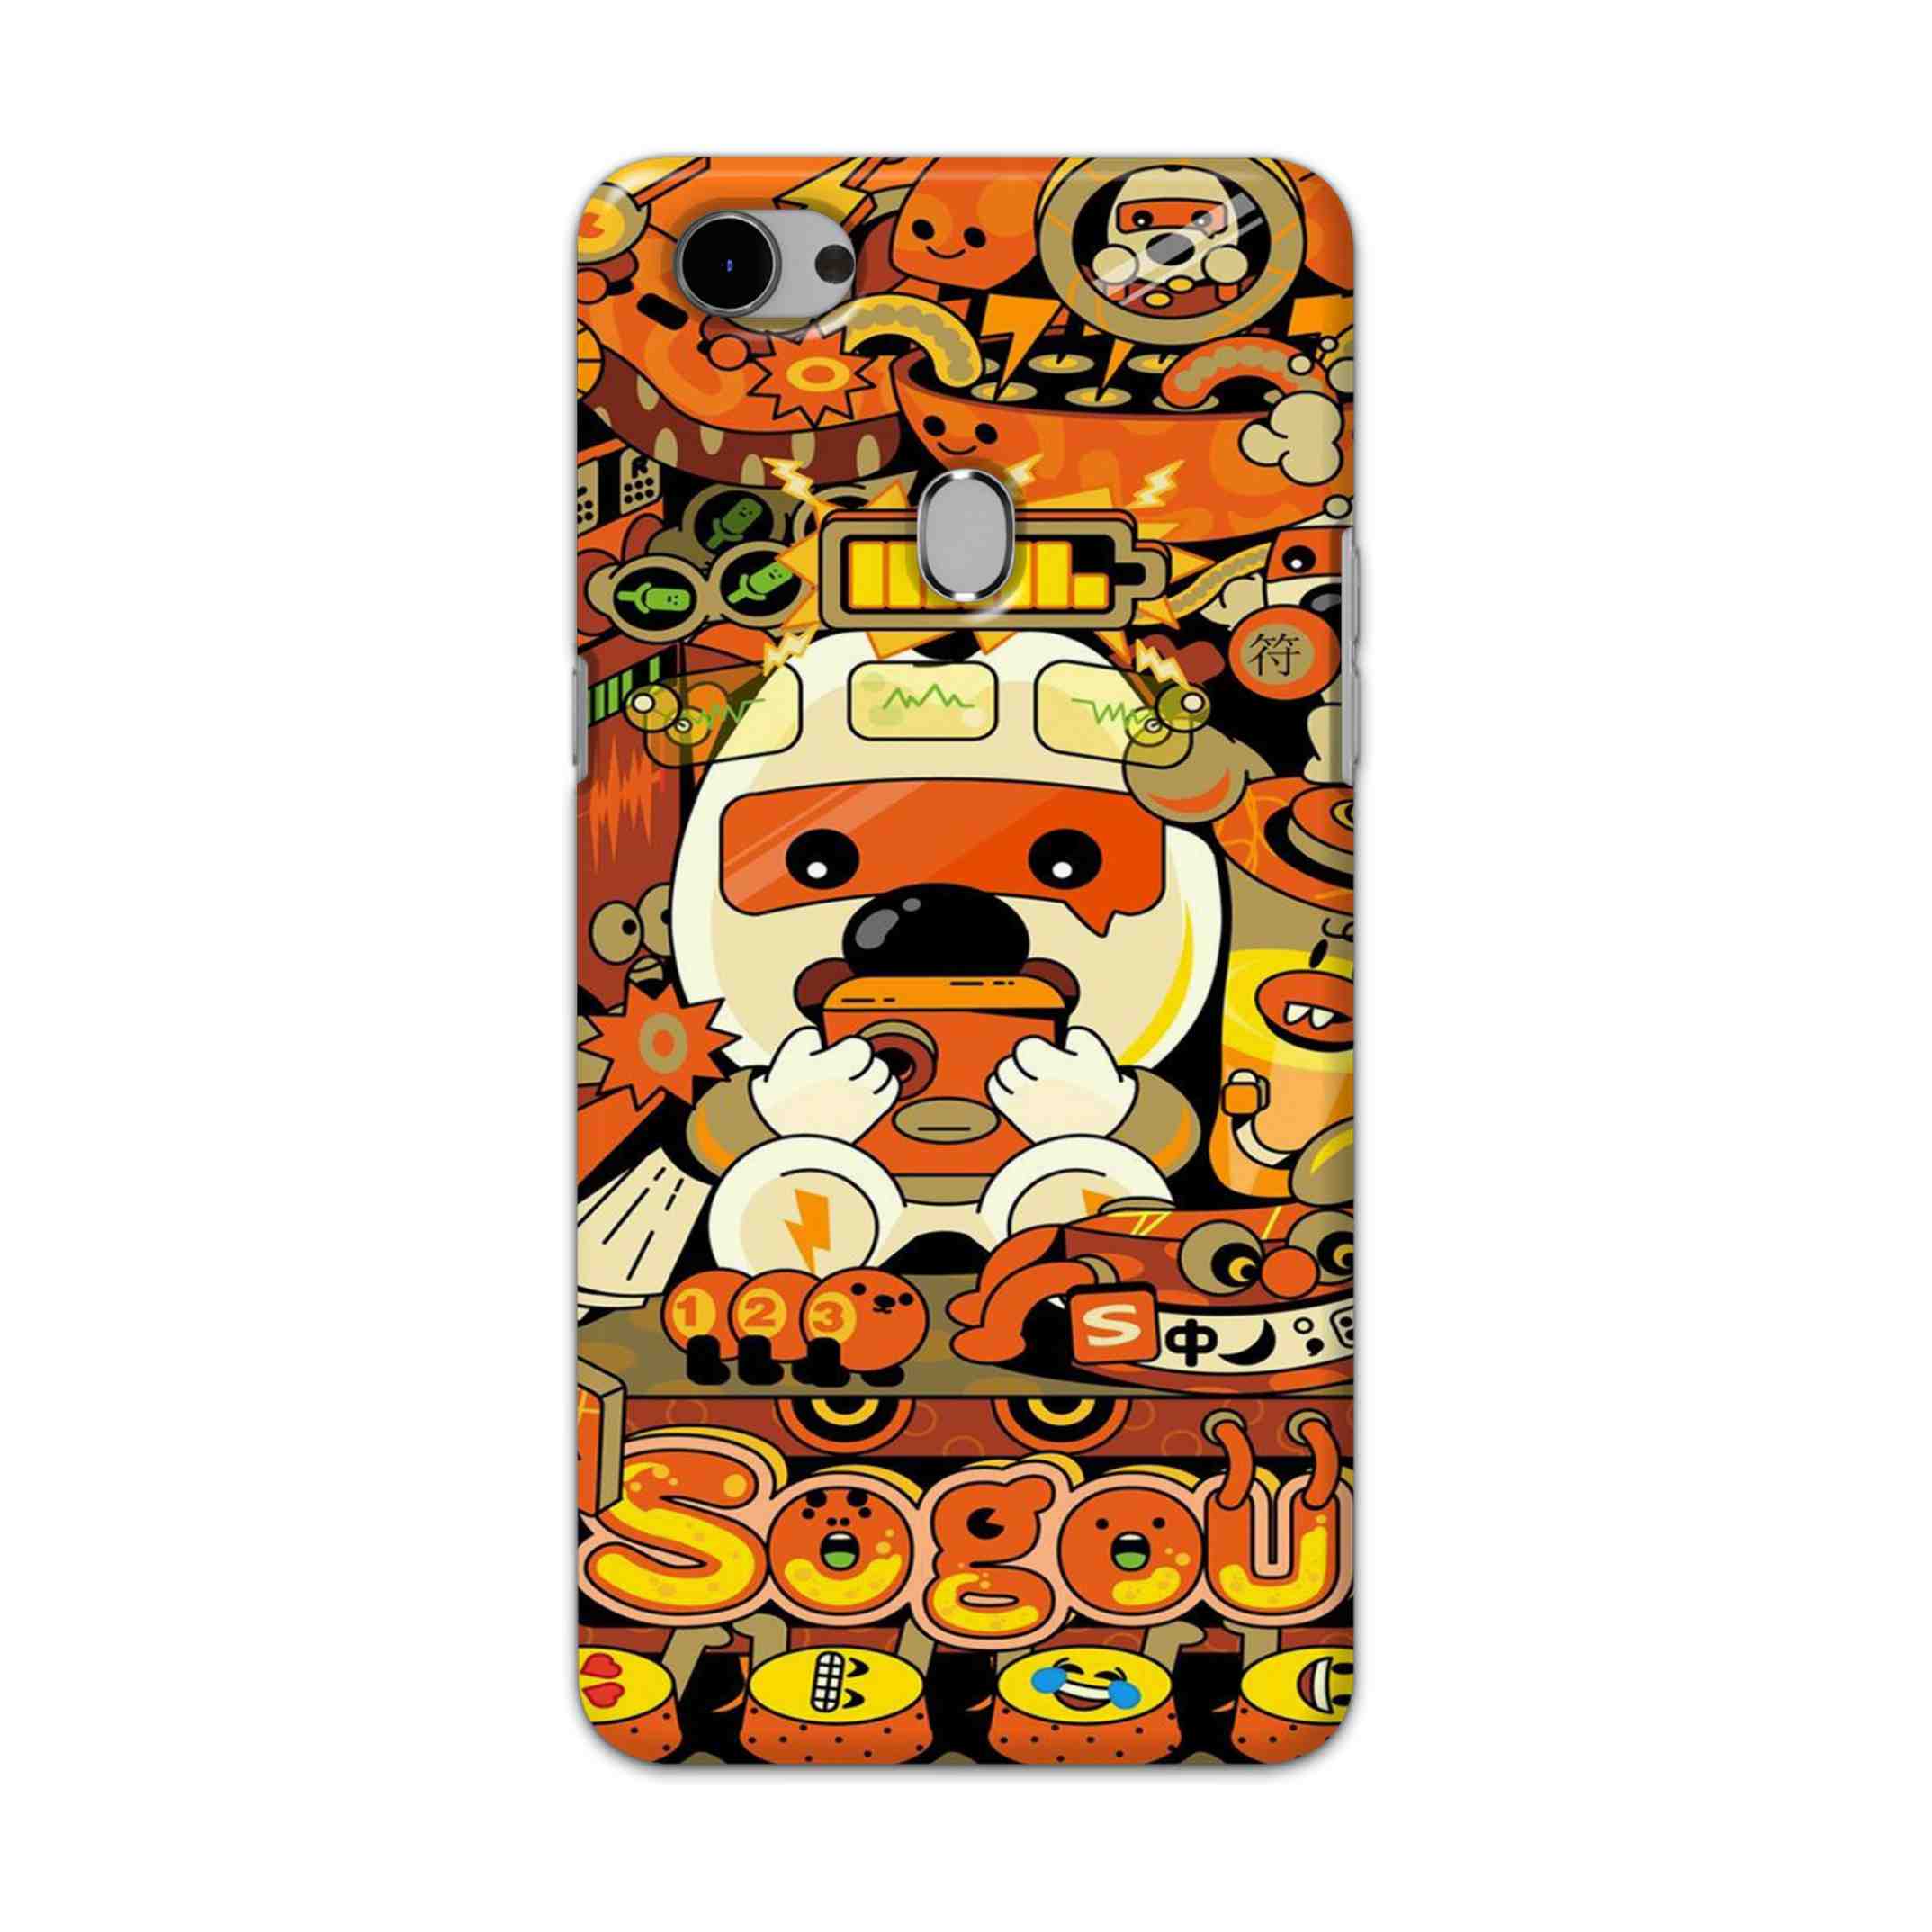 Buy Sogou Hard Back Mobile Phone Case Cover For Oppo F7 Online